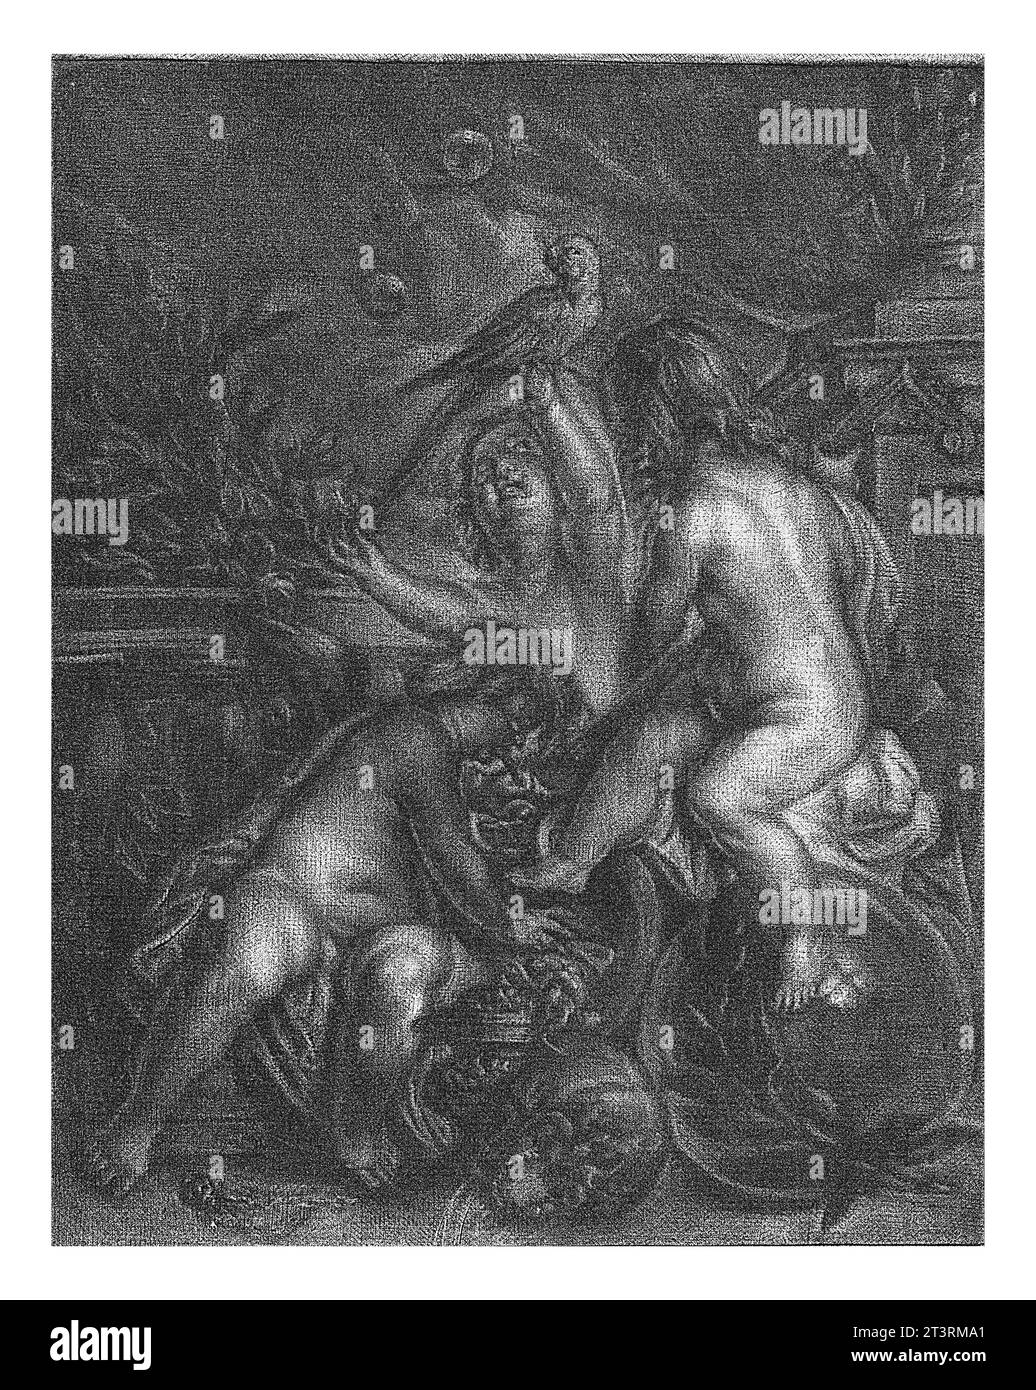 Allegoria di Transience (Vanitas), Jan de Groot, dopo Johannes de Boekhorst, 1745 Allegoria di Transience con tre figli, uno dei quali soffia S Foto Stock